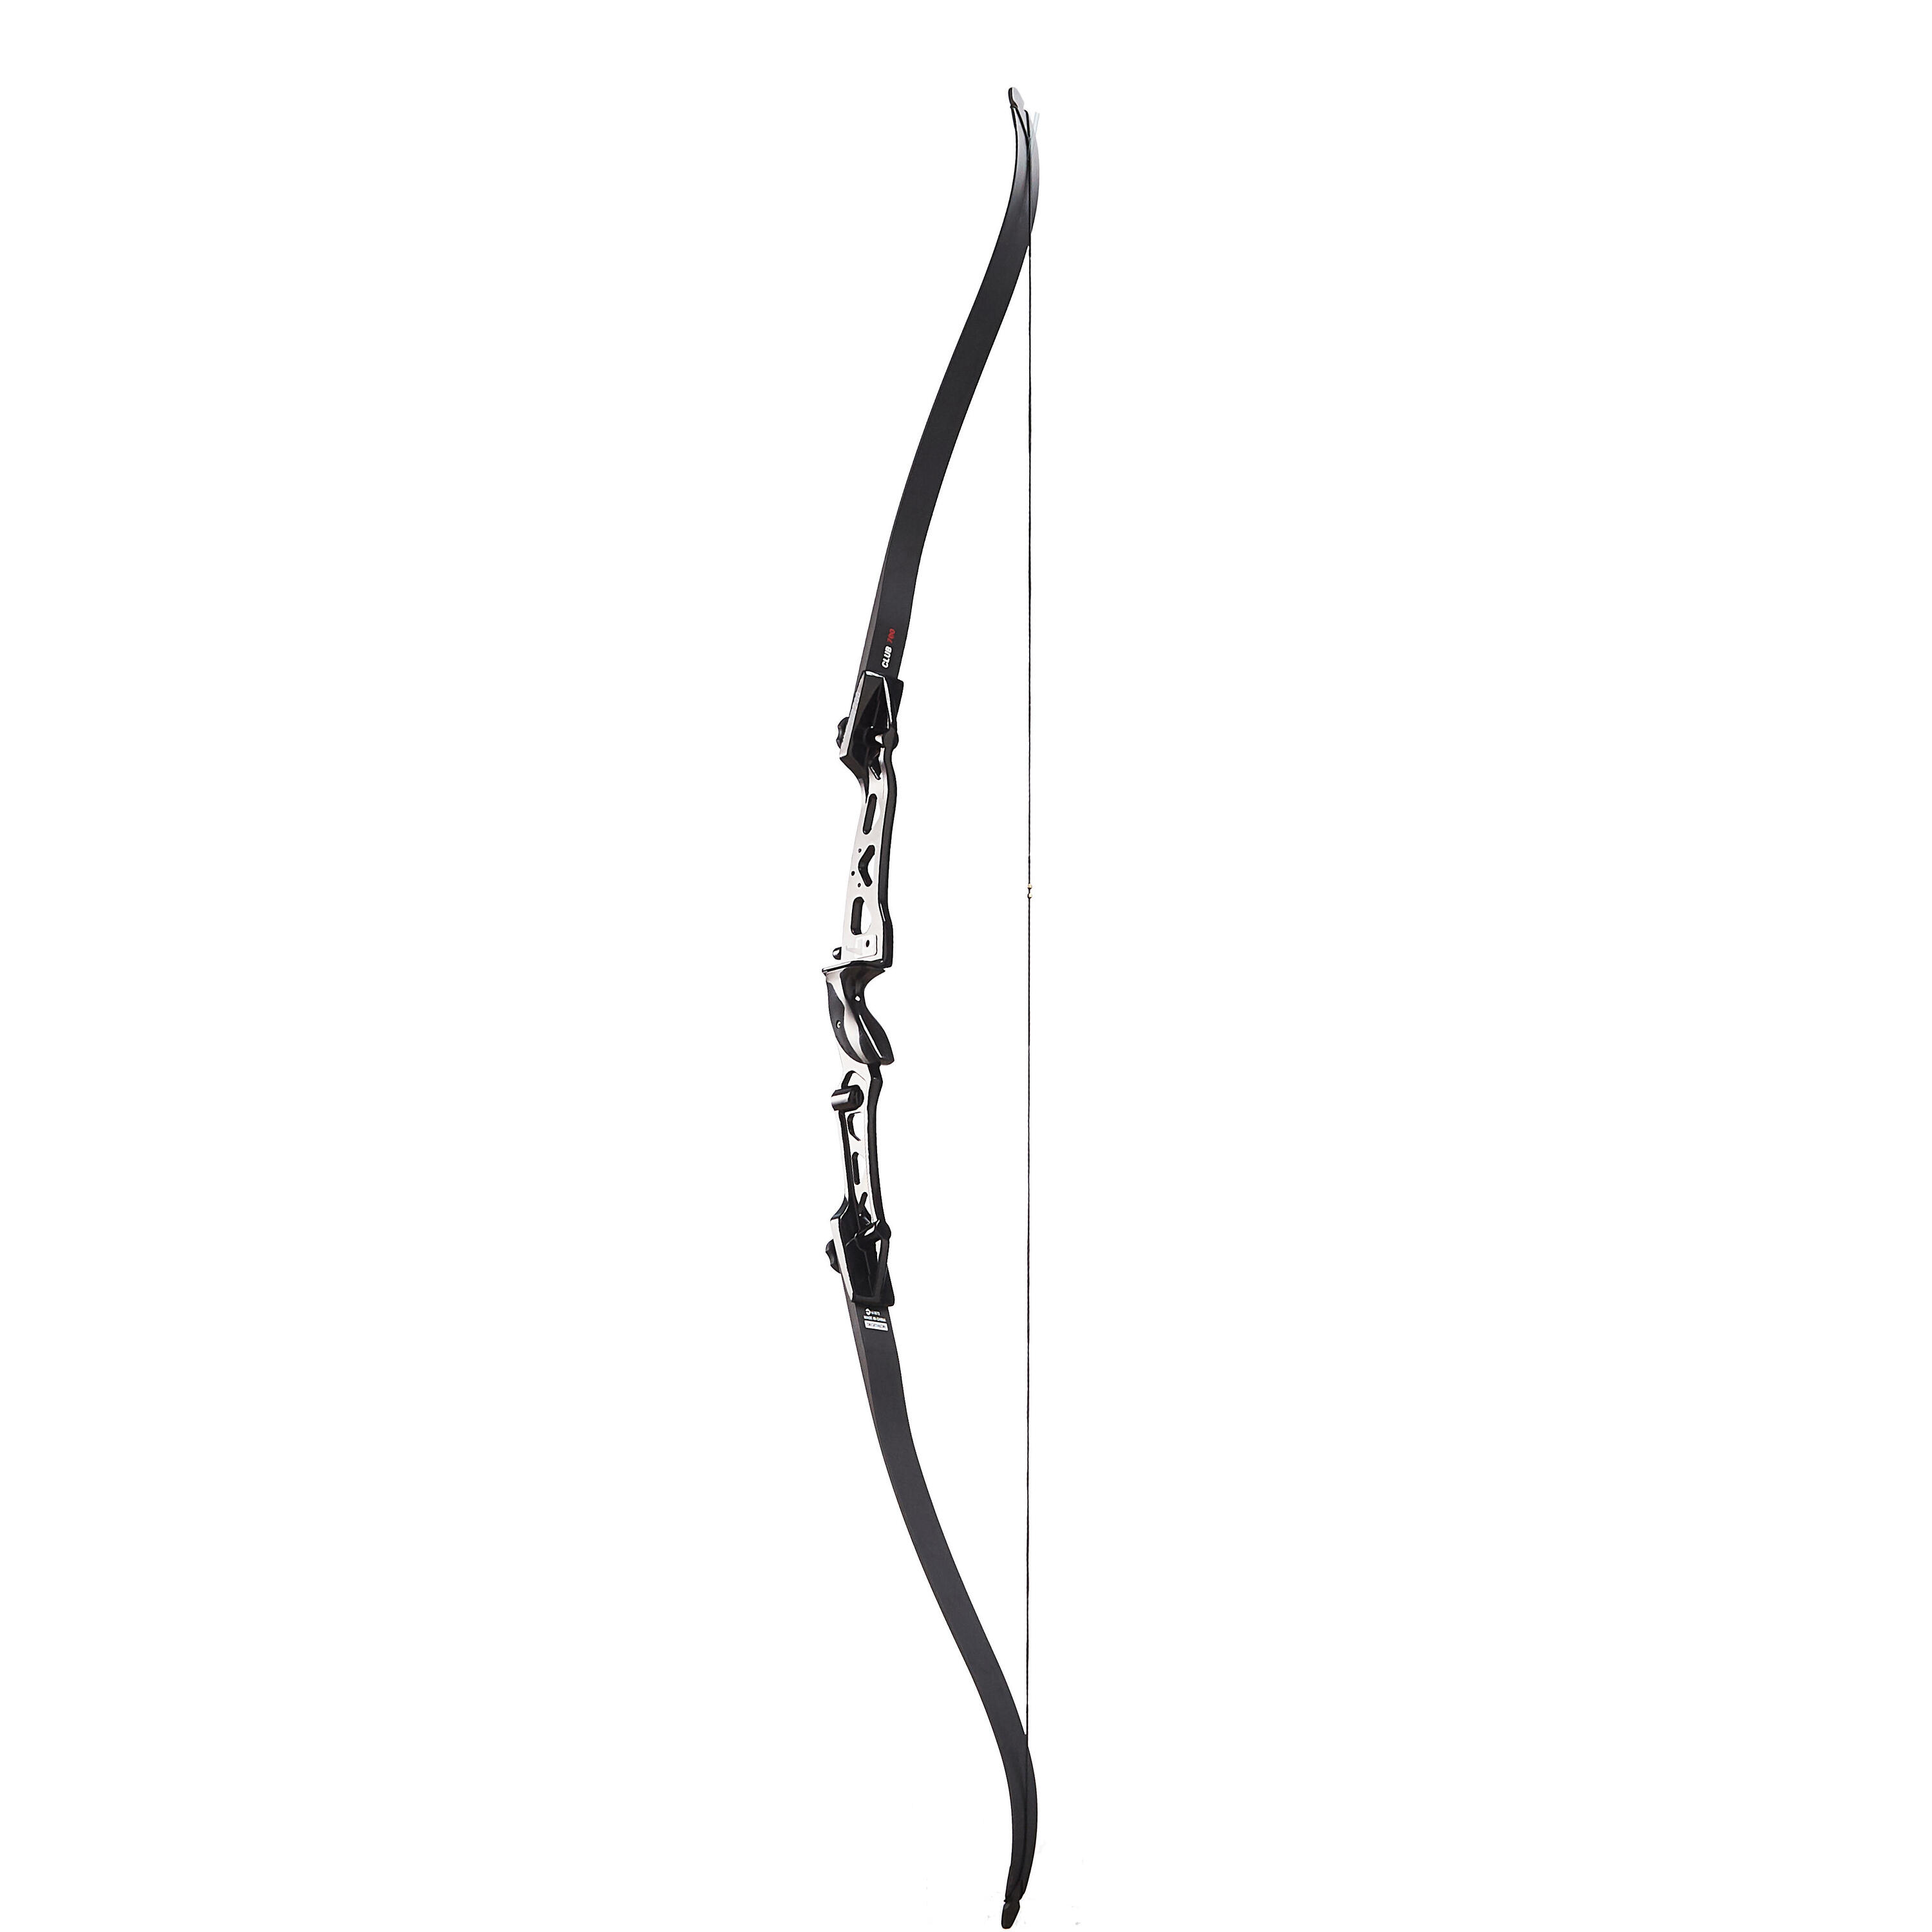 Right Hander Archery Bow Club 700 FB 6/16